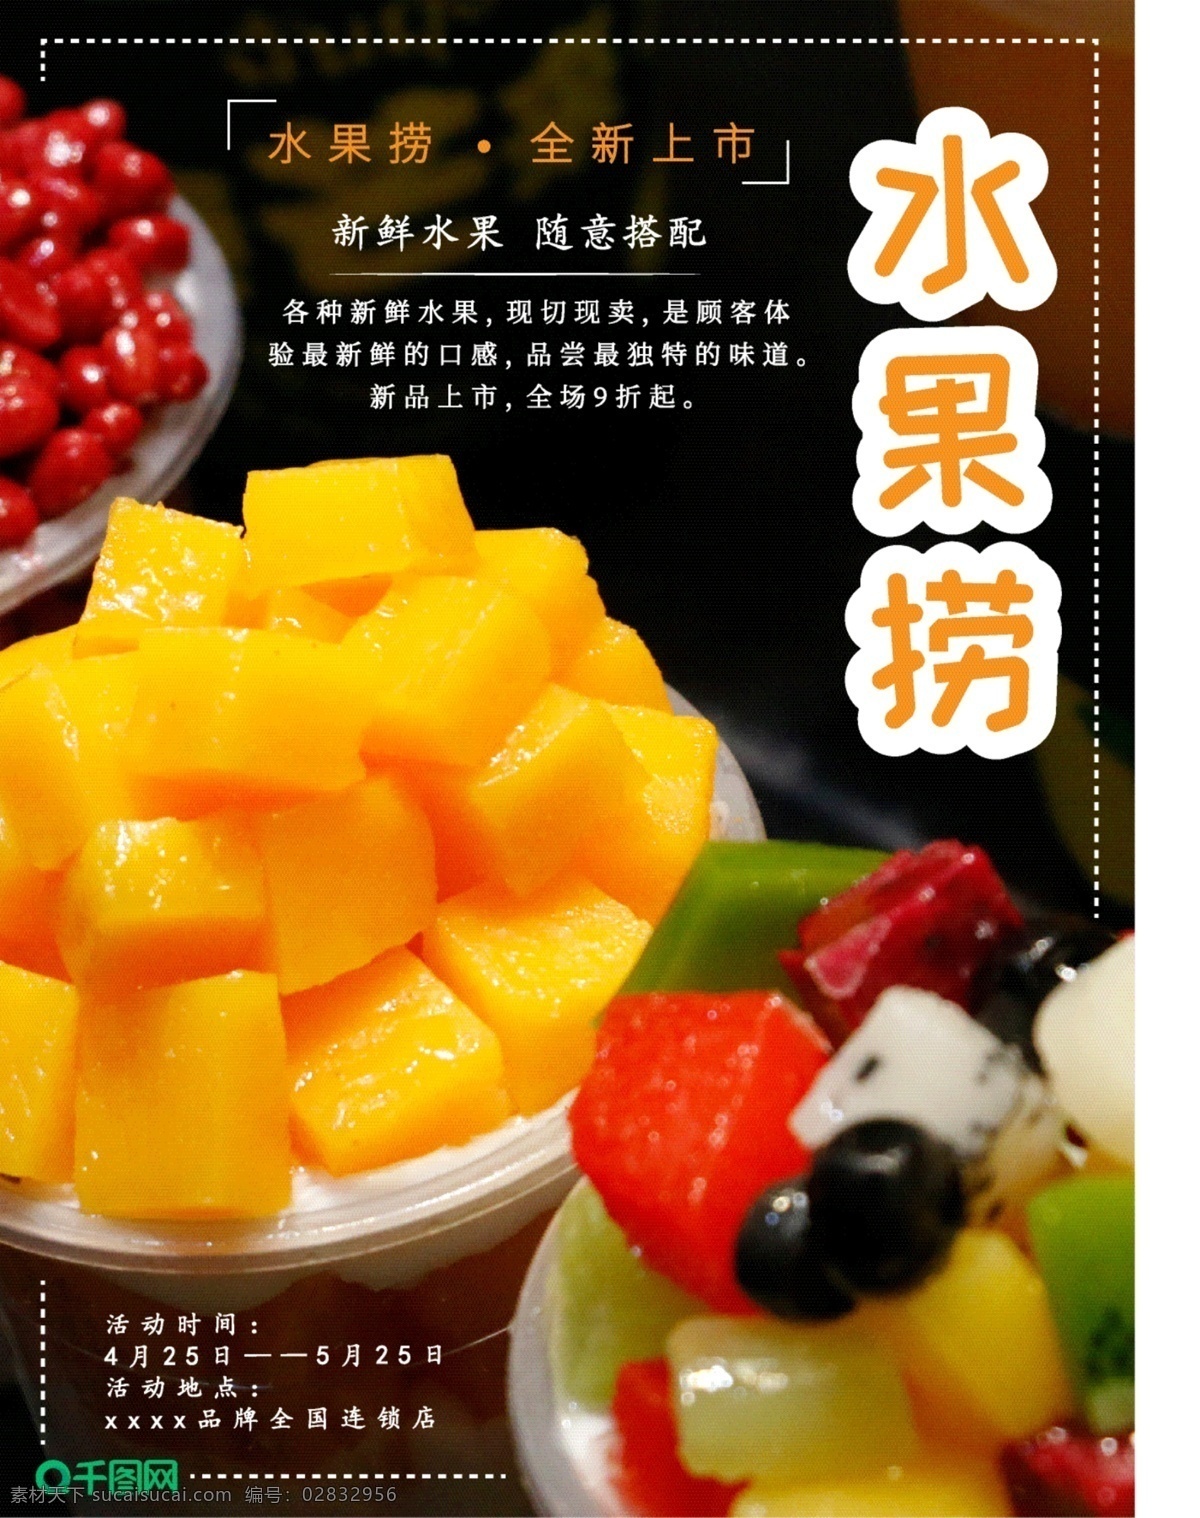 美食 主题 海报 水果 捞 简约 清新 促销 甜品 水果捞 宣传